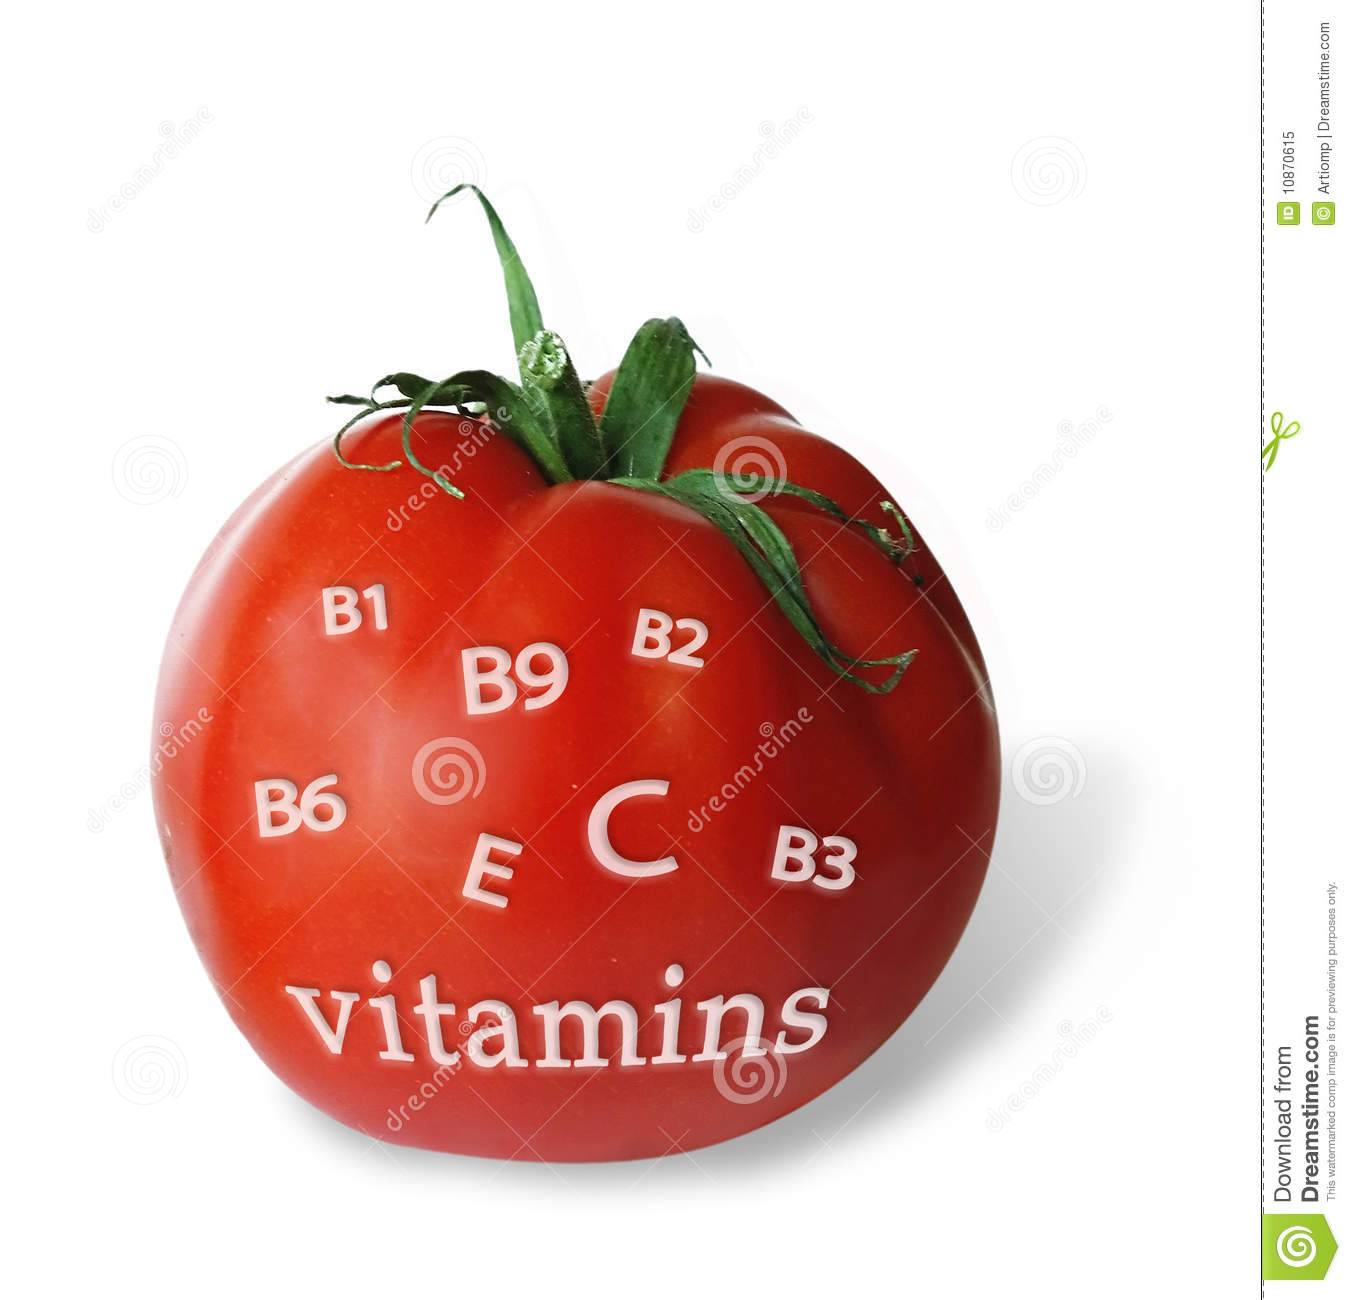 Какие витамины в помидорах?